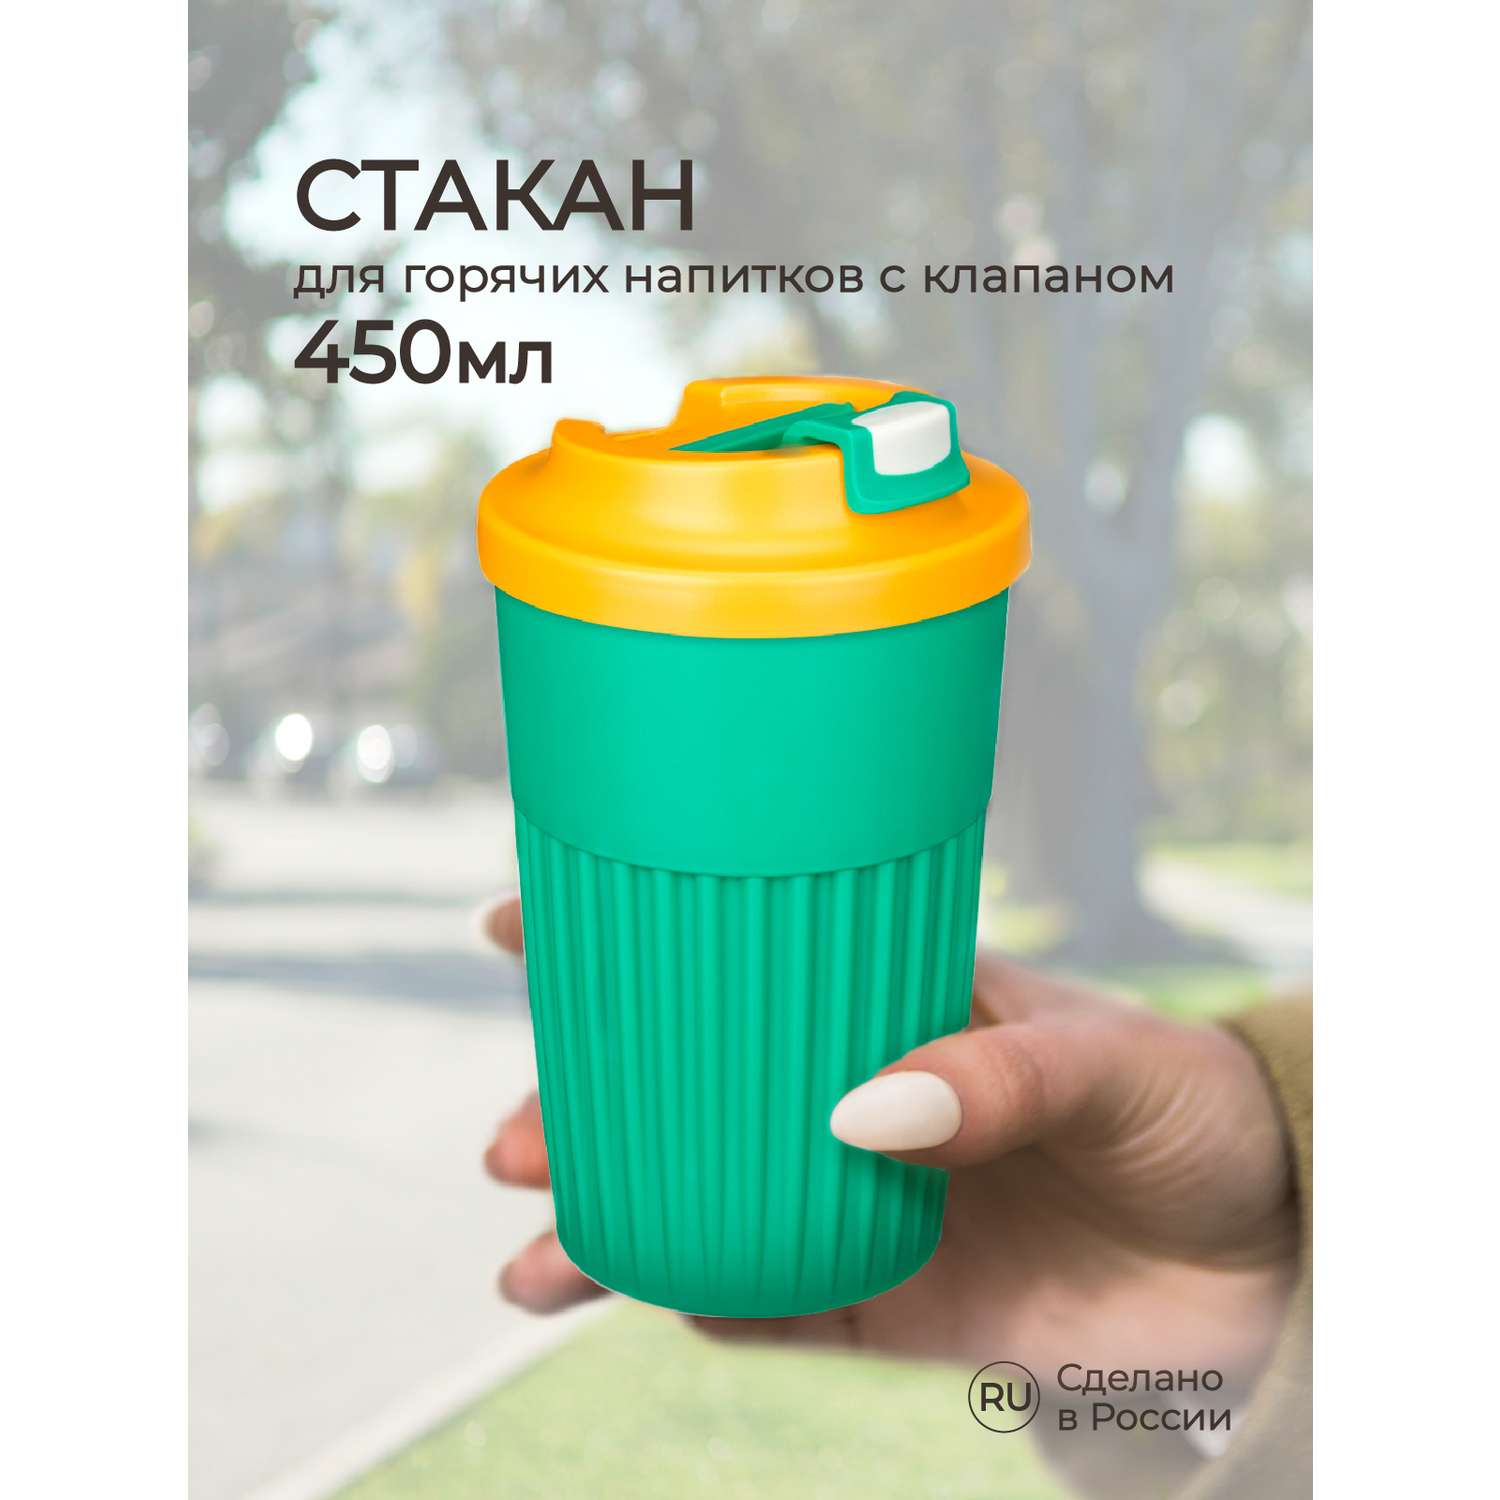 Стакан Phibo для горячих напитков с клапаном 450мл зеленый - фото 1